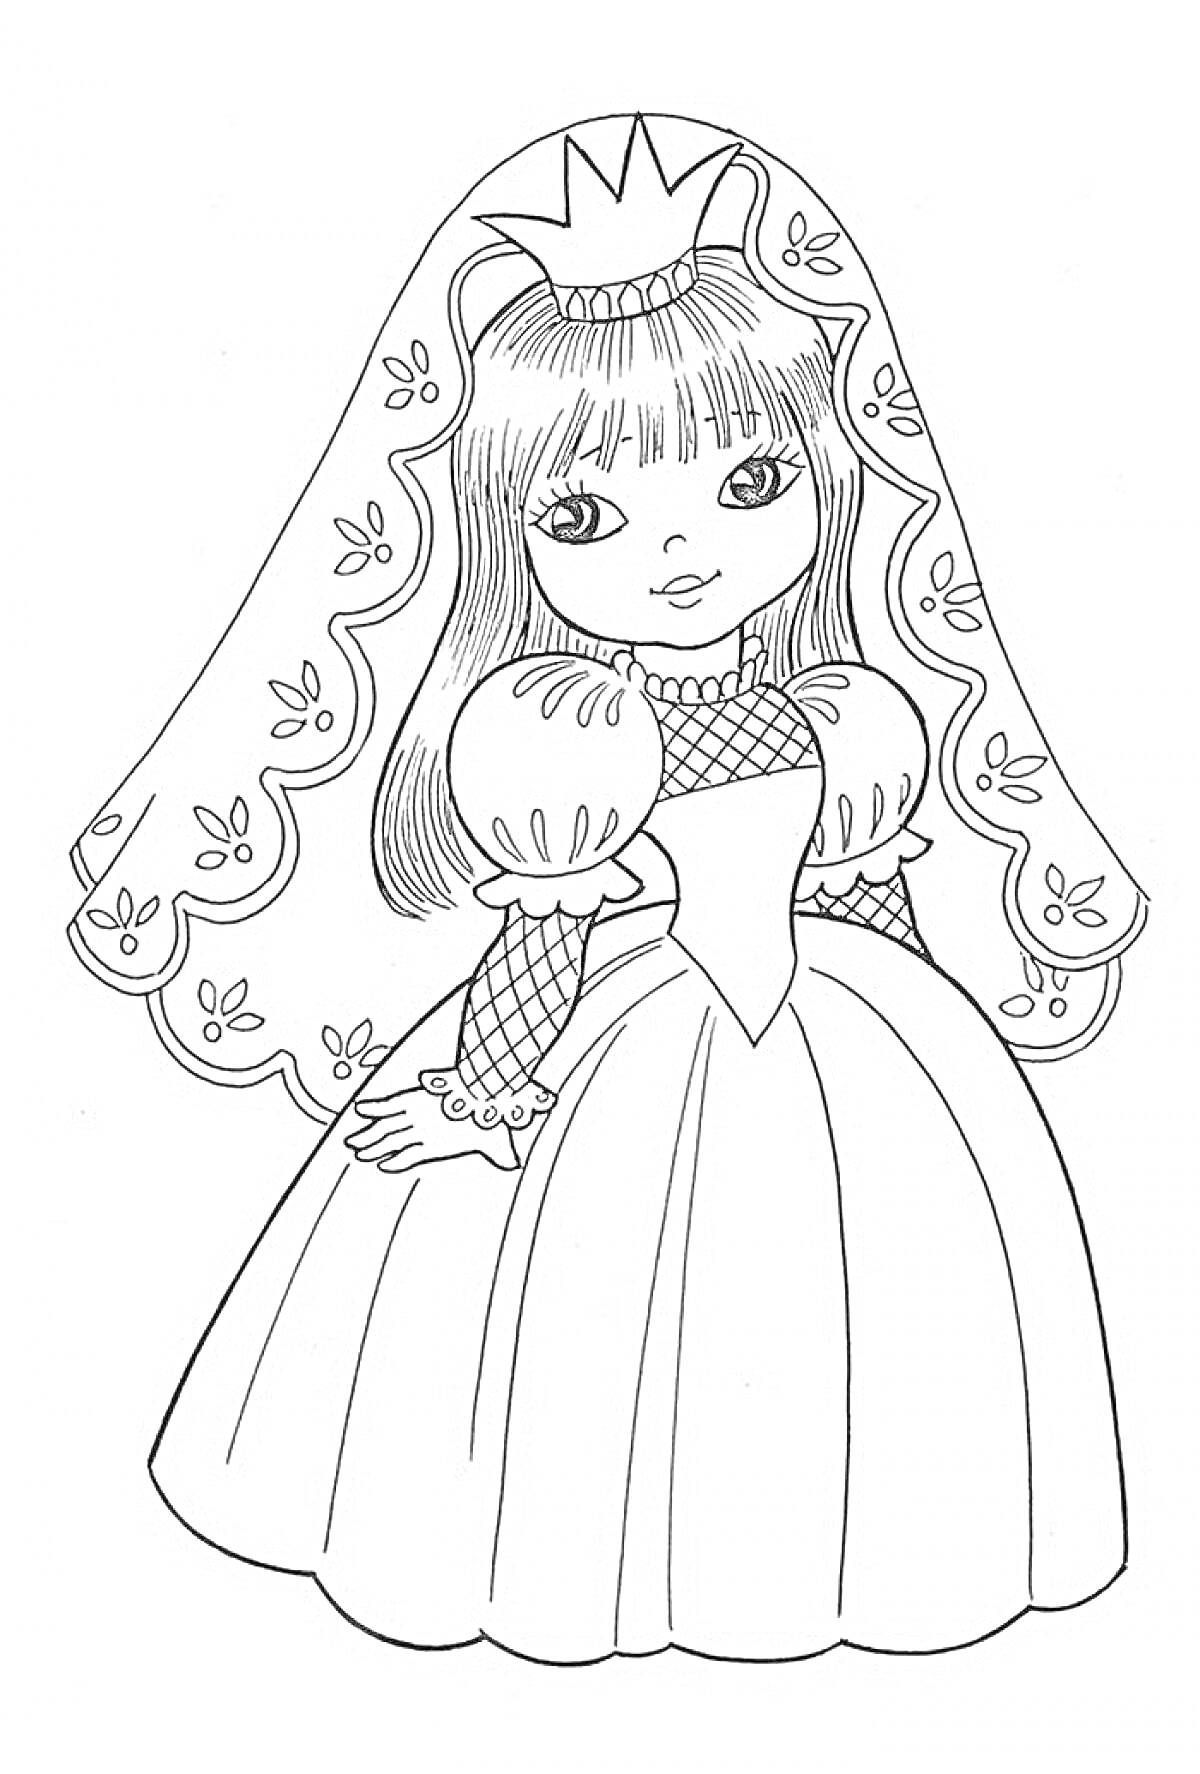 Принцесса-кукла с короной и длинным платьем с фатой, украшенной цветочными узорами